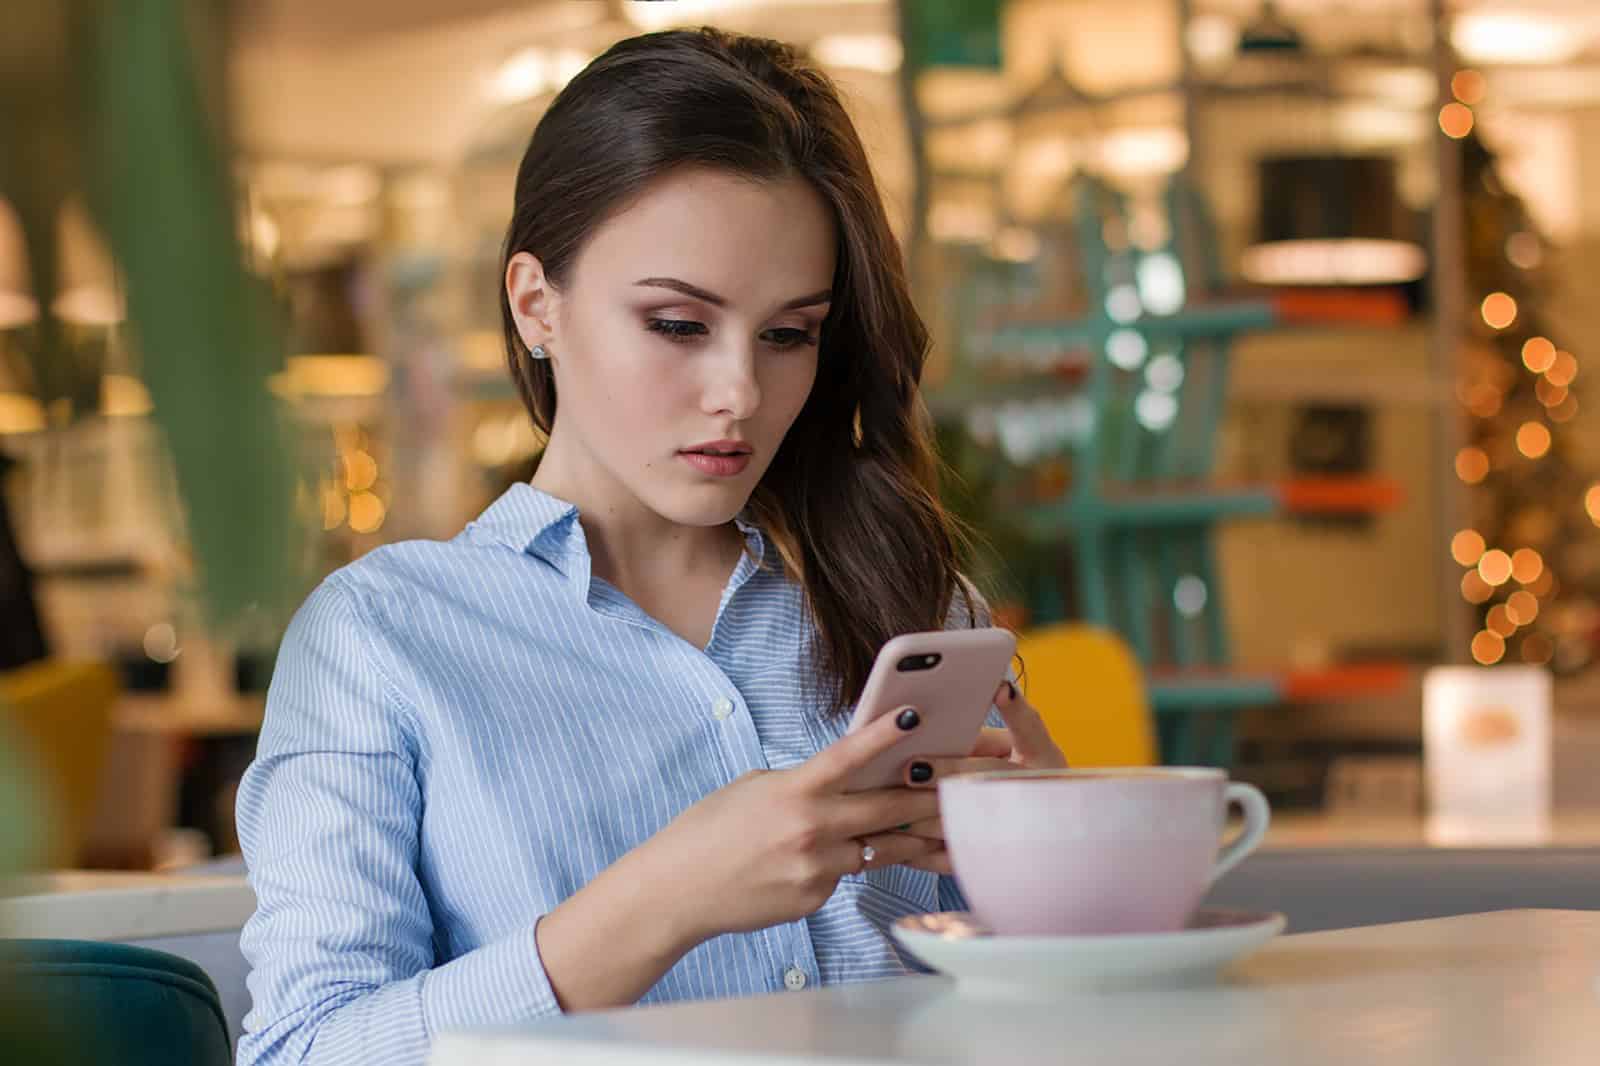 besorgte Frau, die Smartphone betrachtet und im Café sitzt